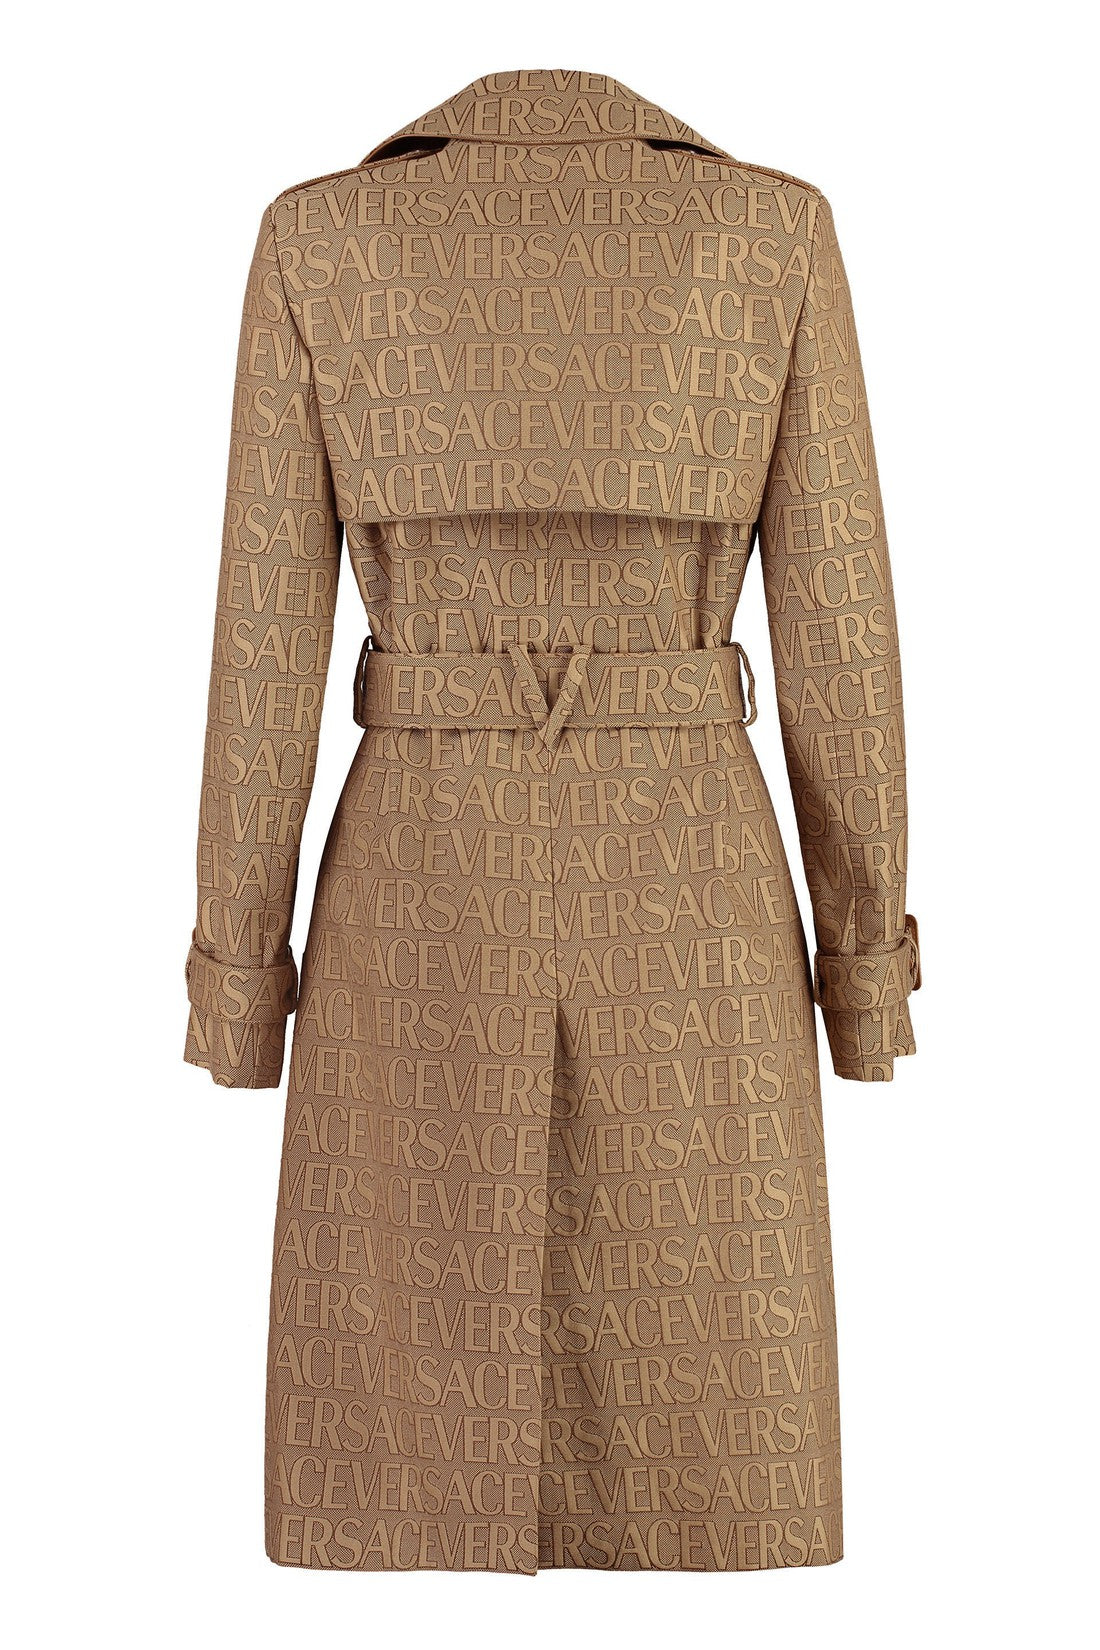 Versace-OUTLET-SALE-Cotton blend trench coat-ARCHIVIST